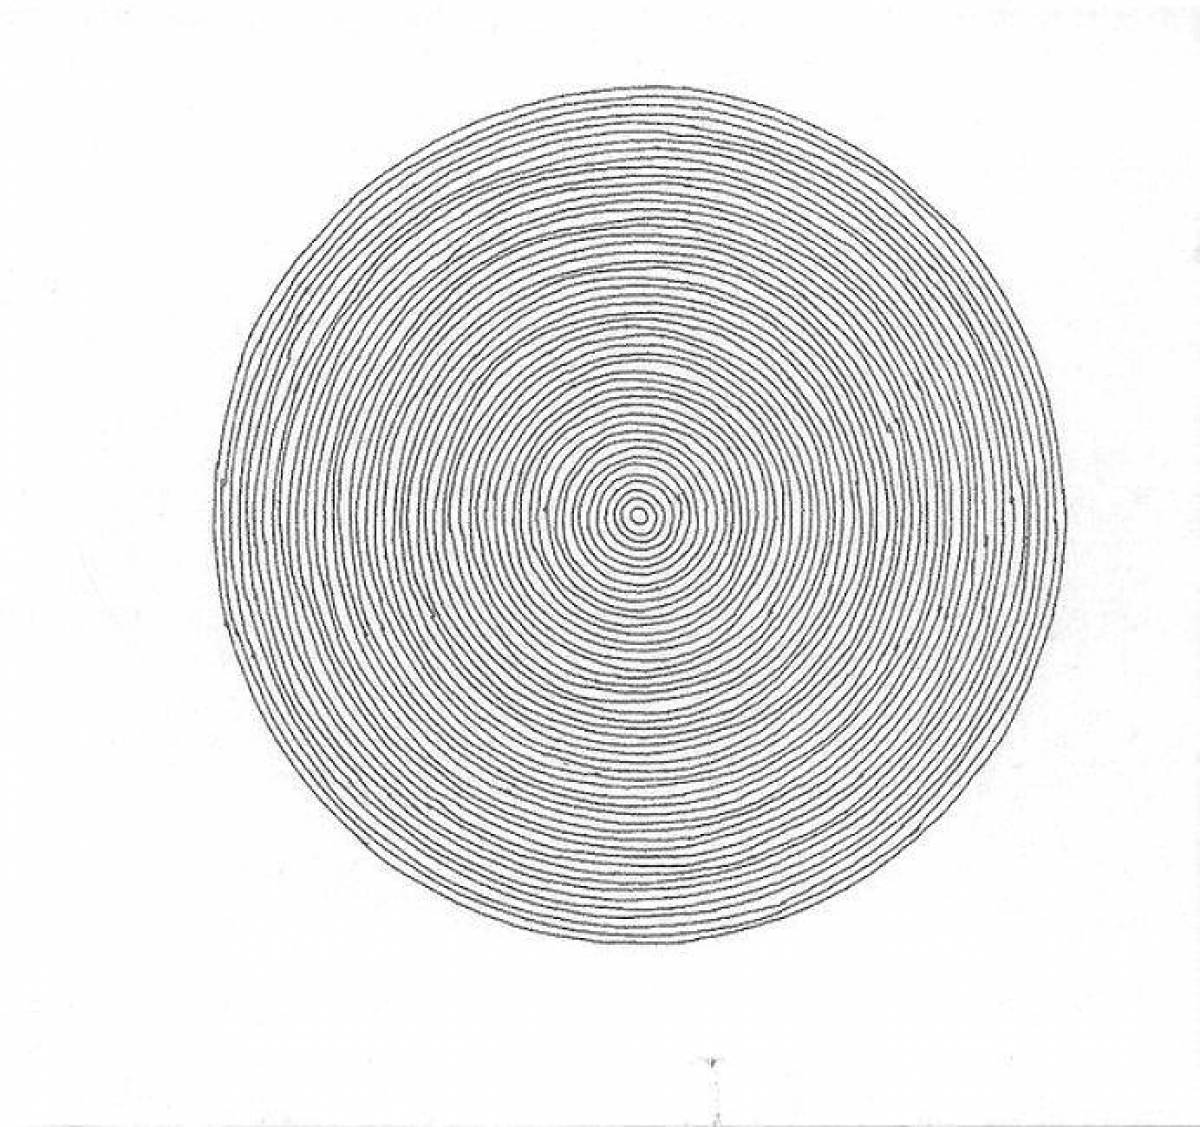 Dima Maslennikov's harmonious spiral